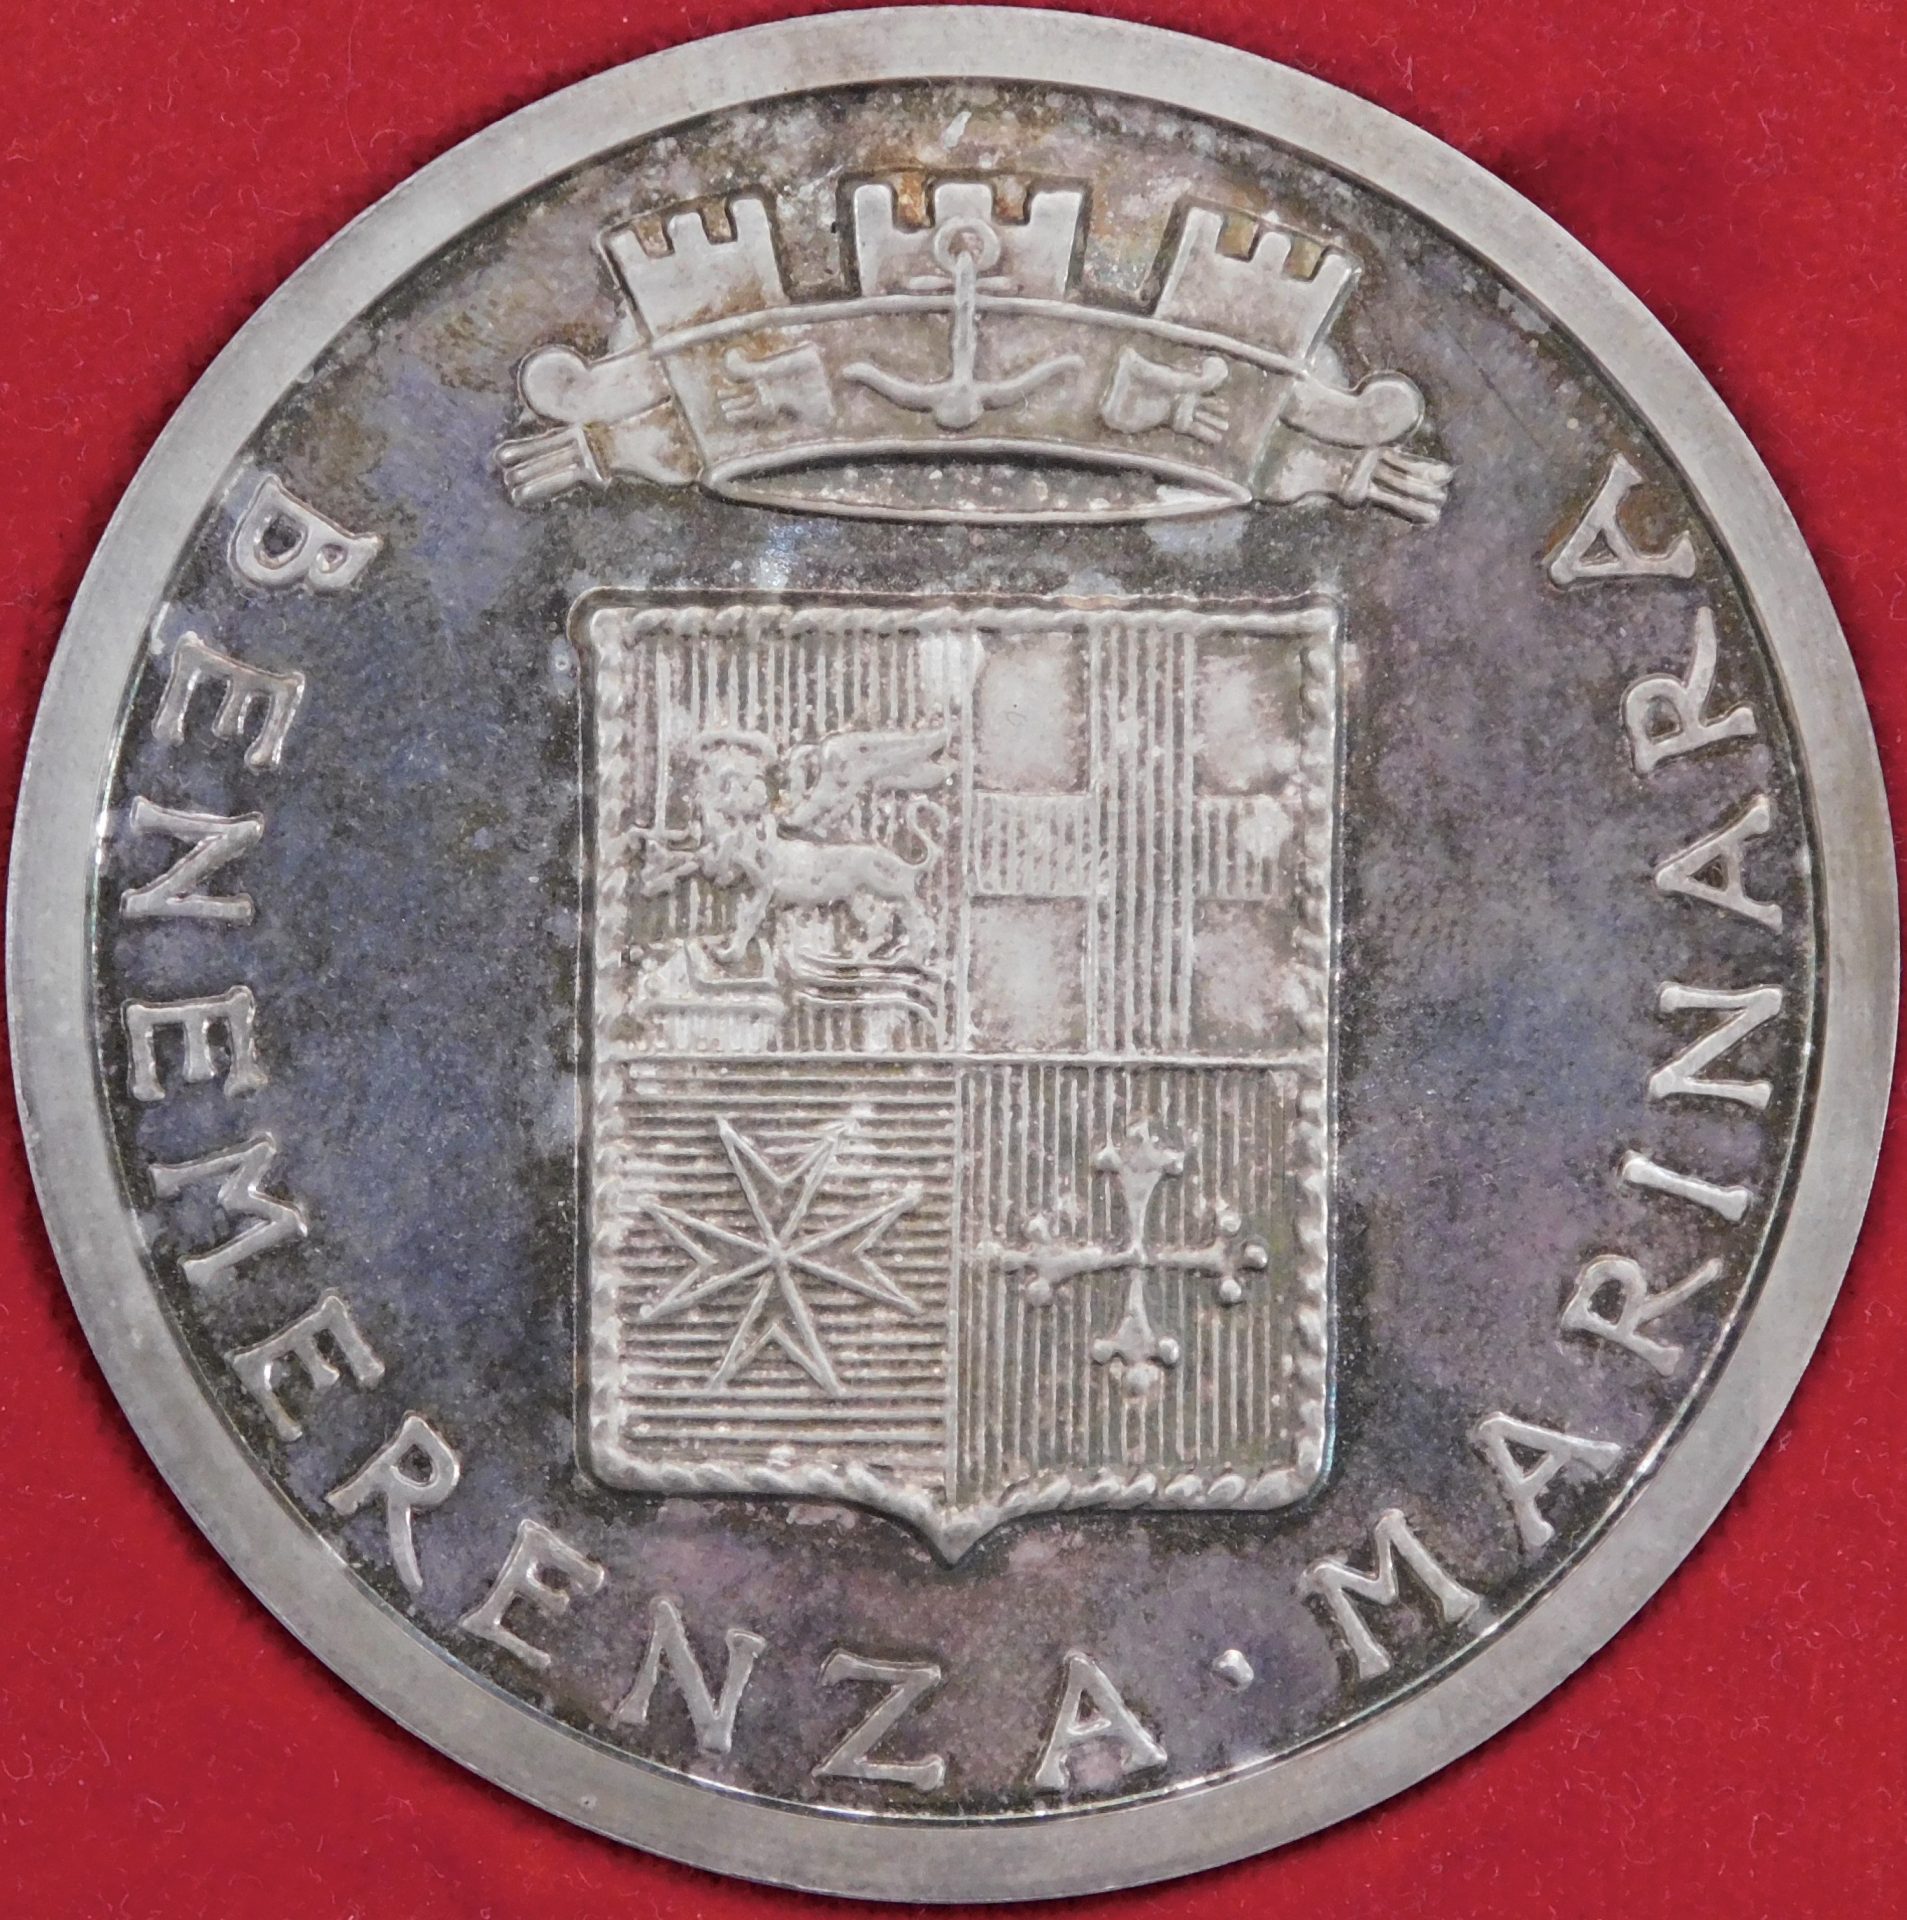 La medaglia d'argento di Benemerenza Marinara consegnata al Com.te Aldo Baffo